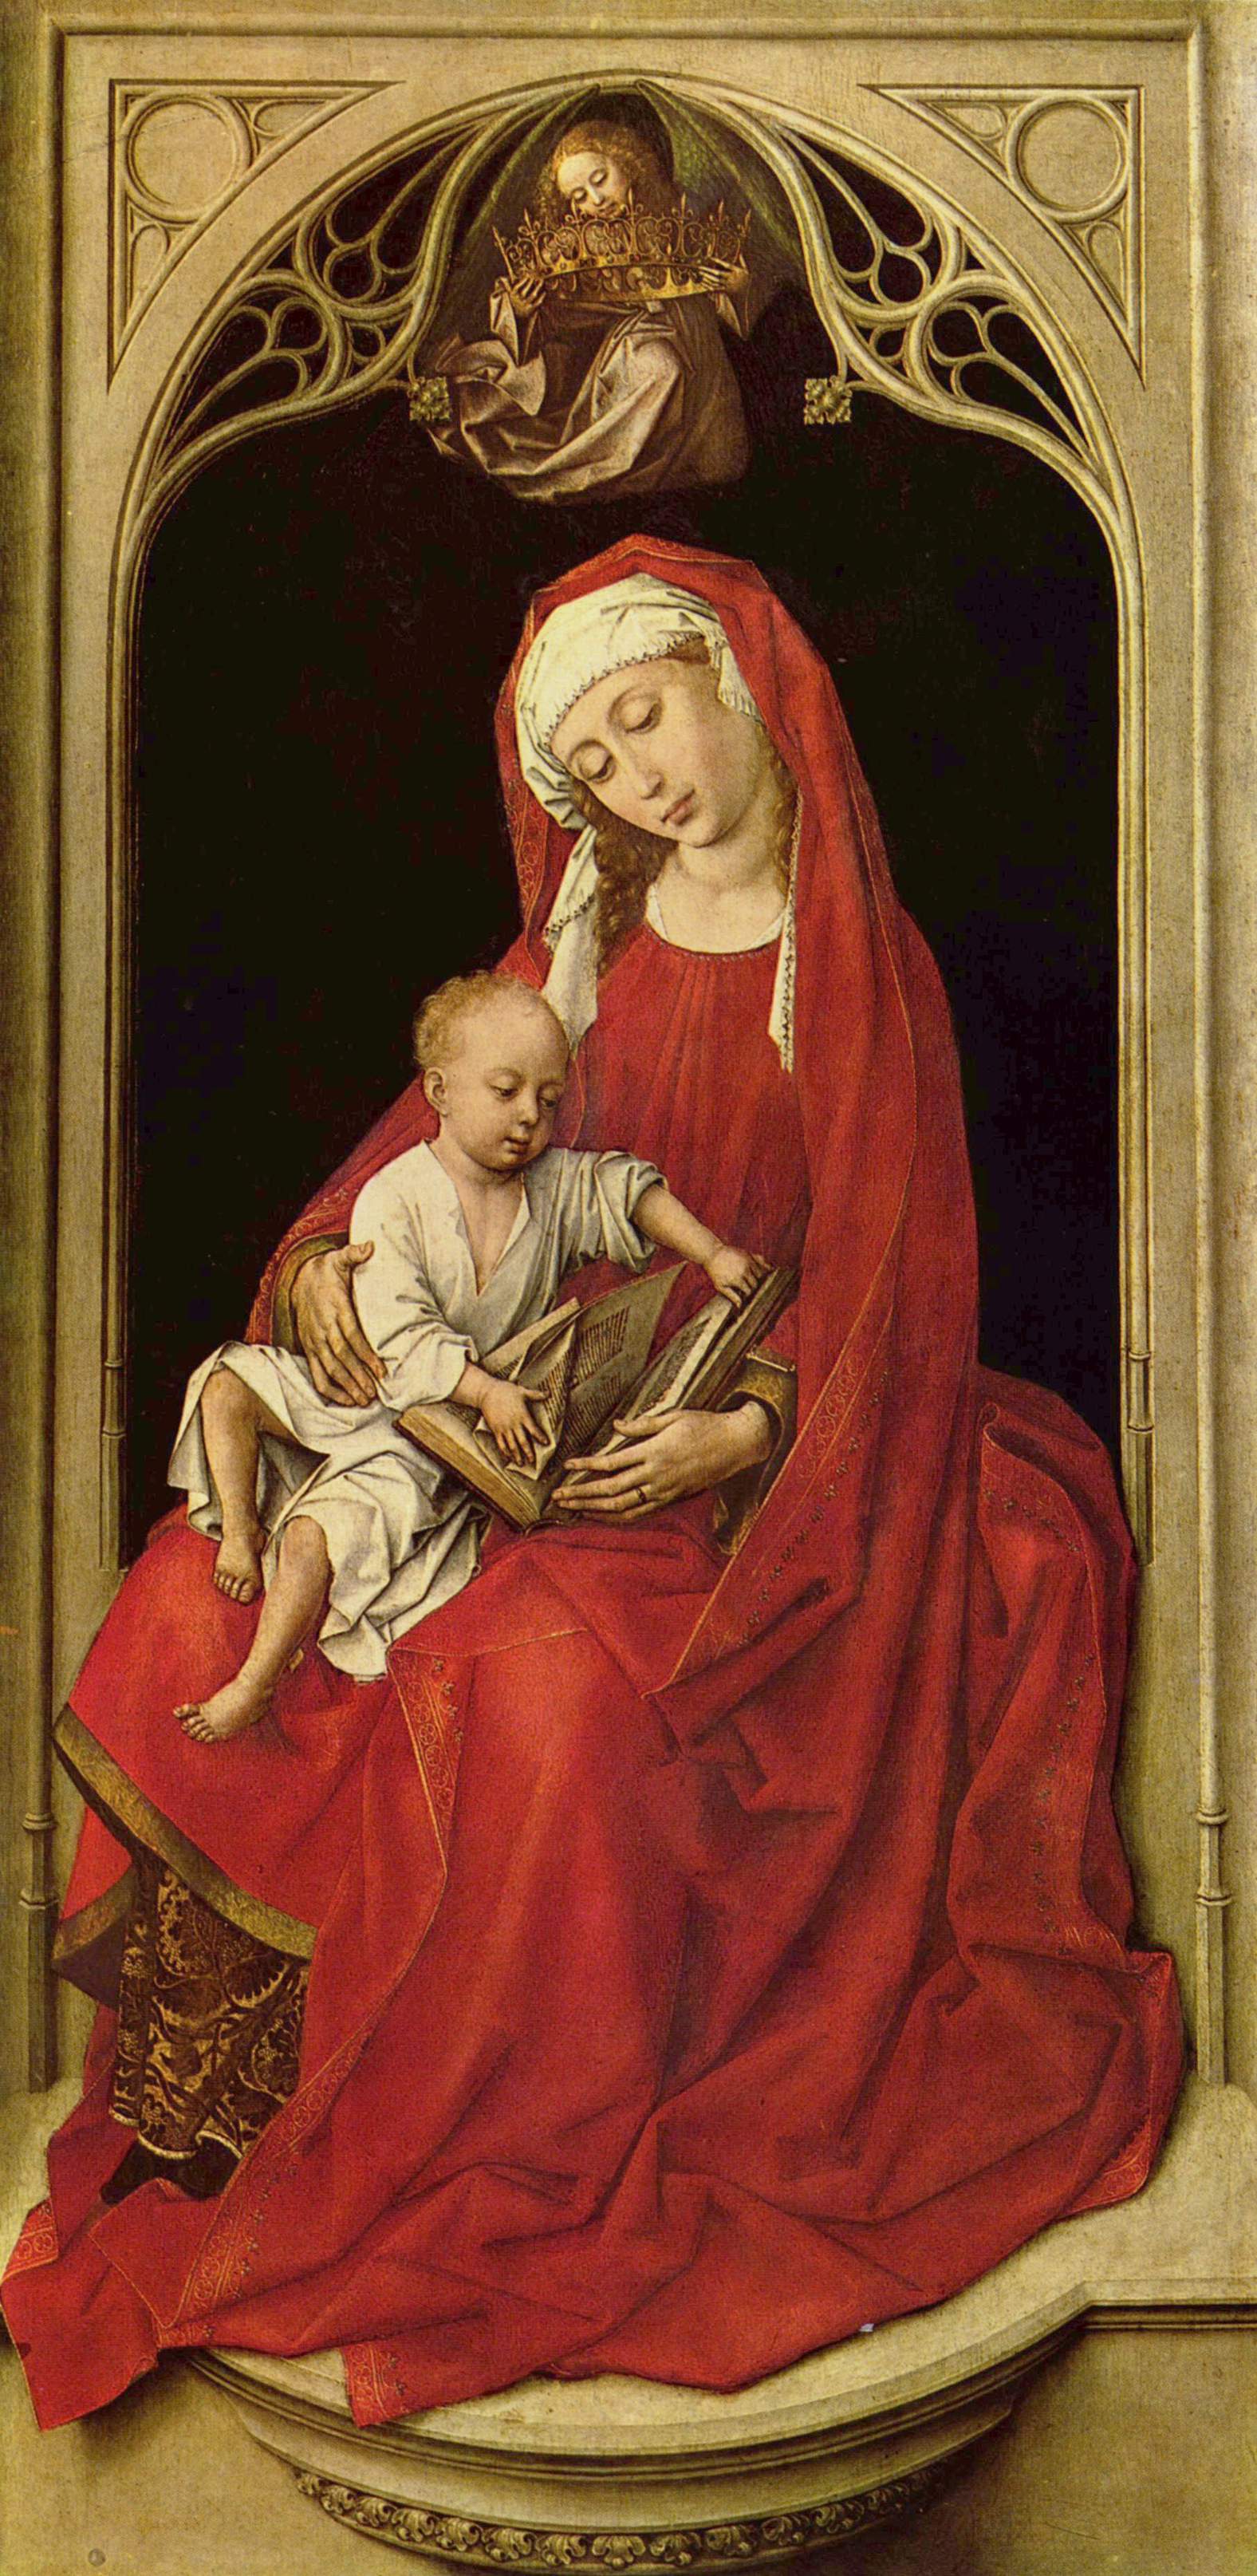 Madonna and Child - Rogier van der Weyden - WikiArt.org